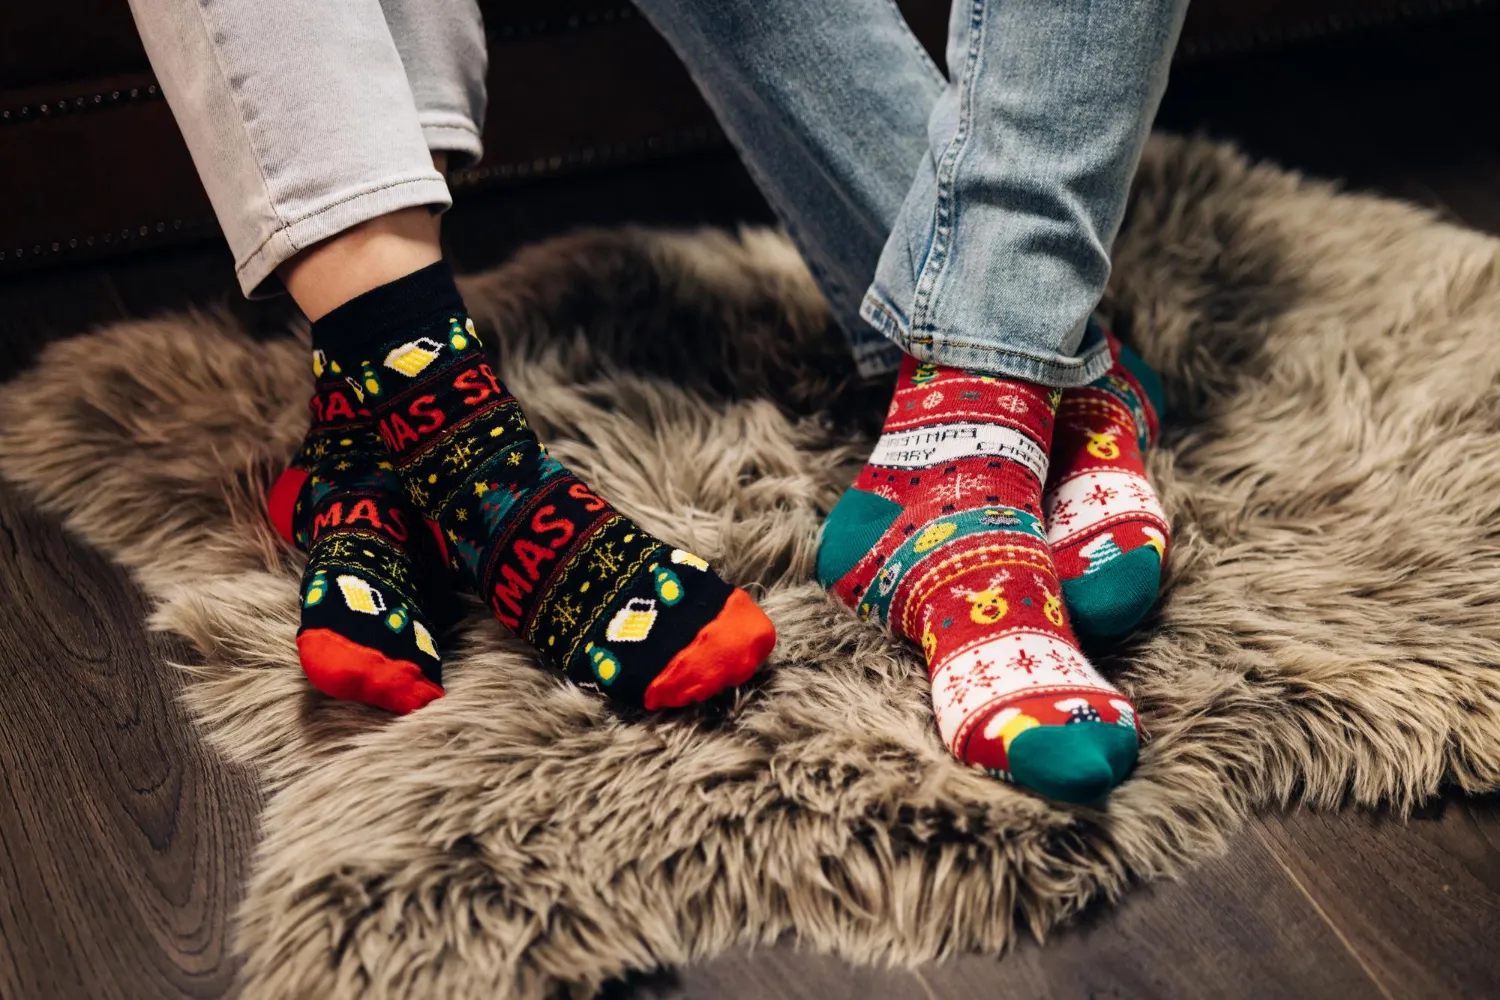 Feet in colorful wool socks legs in winter christmas socks in cozy home interior christmas socks two